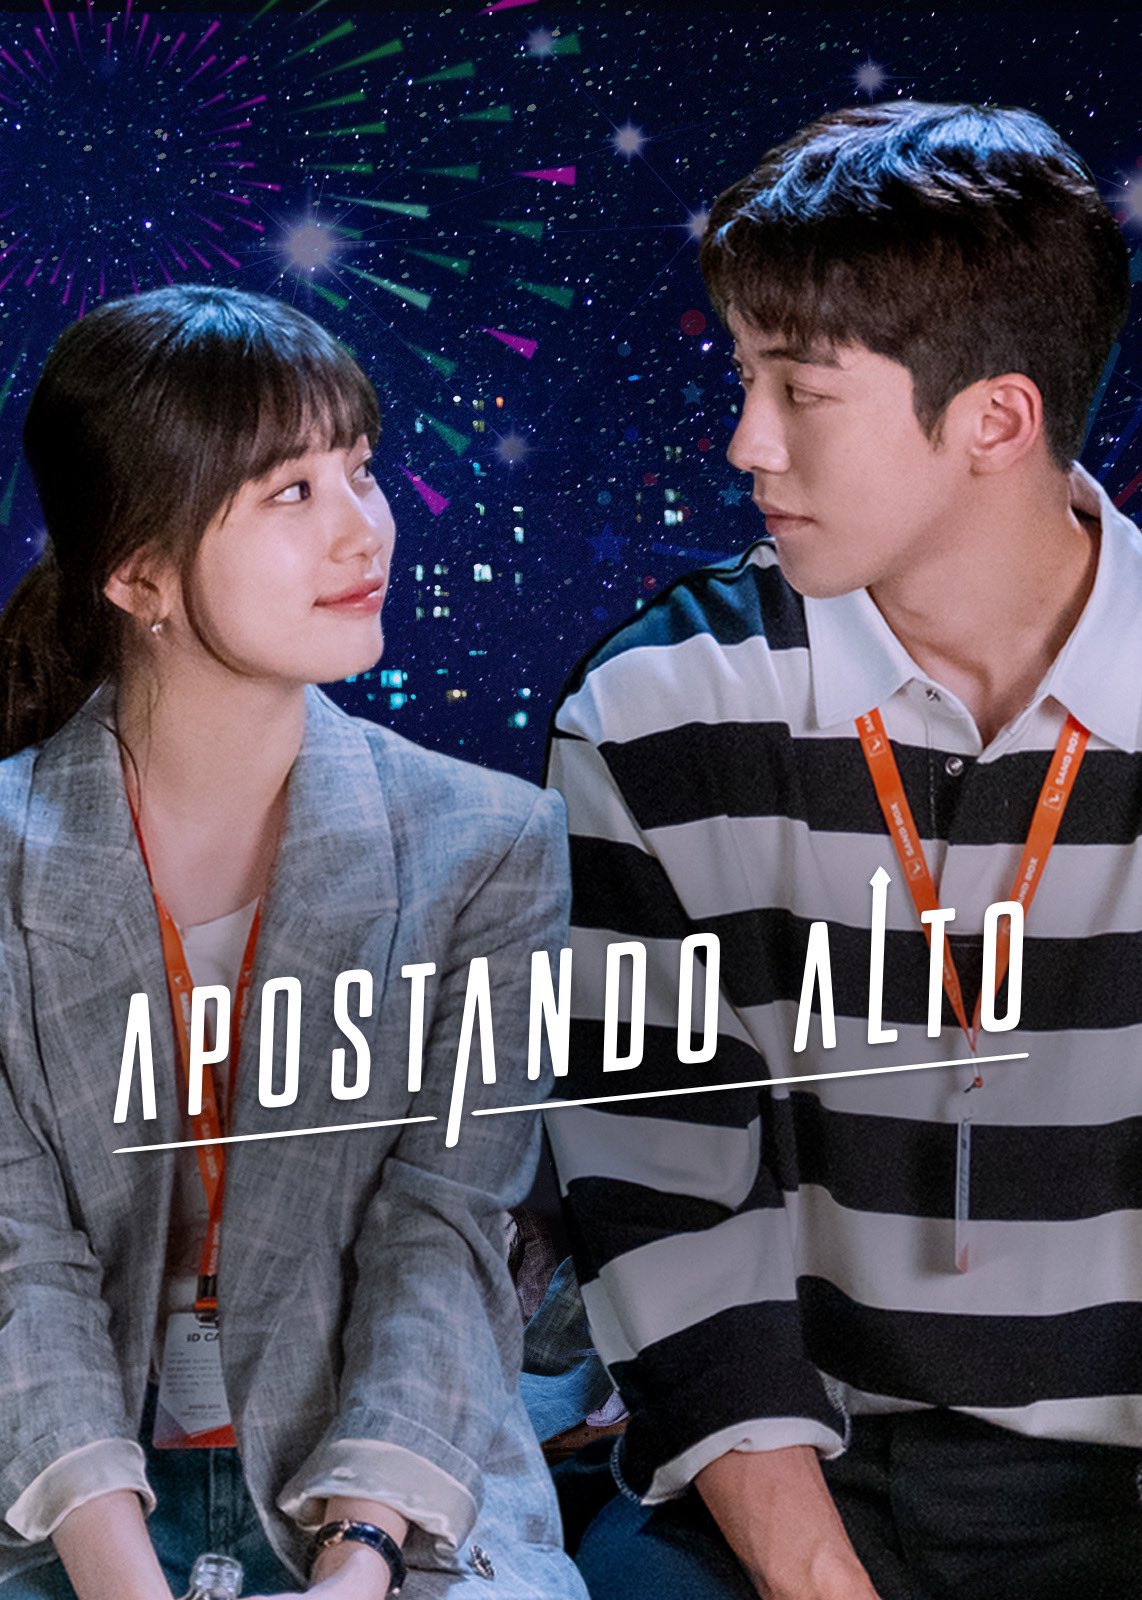 Love to Hate You: conheça sinopse e elenco da série coreana na Netflix